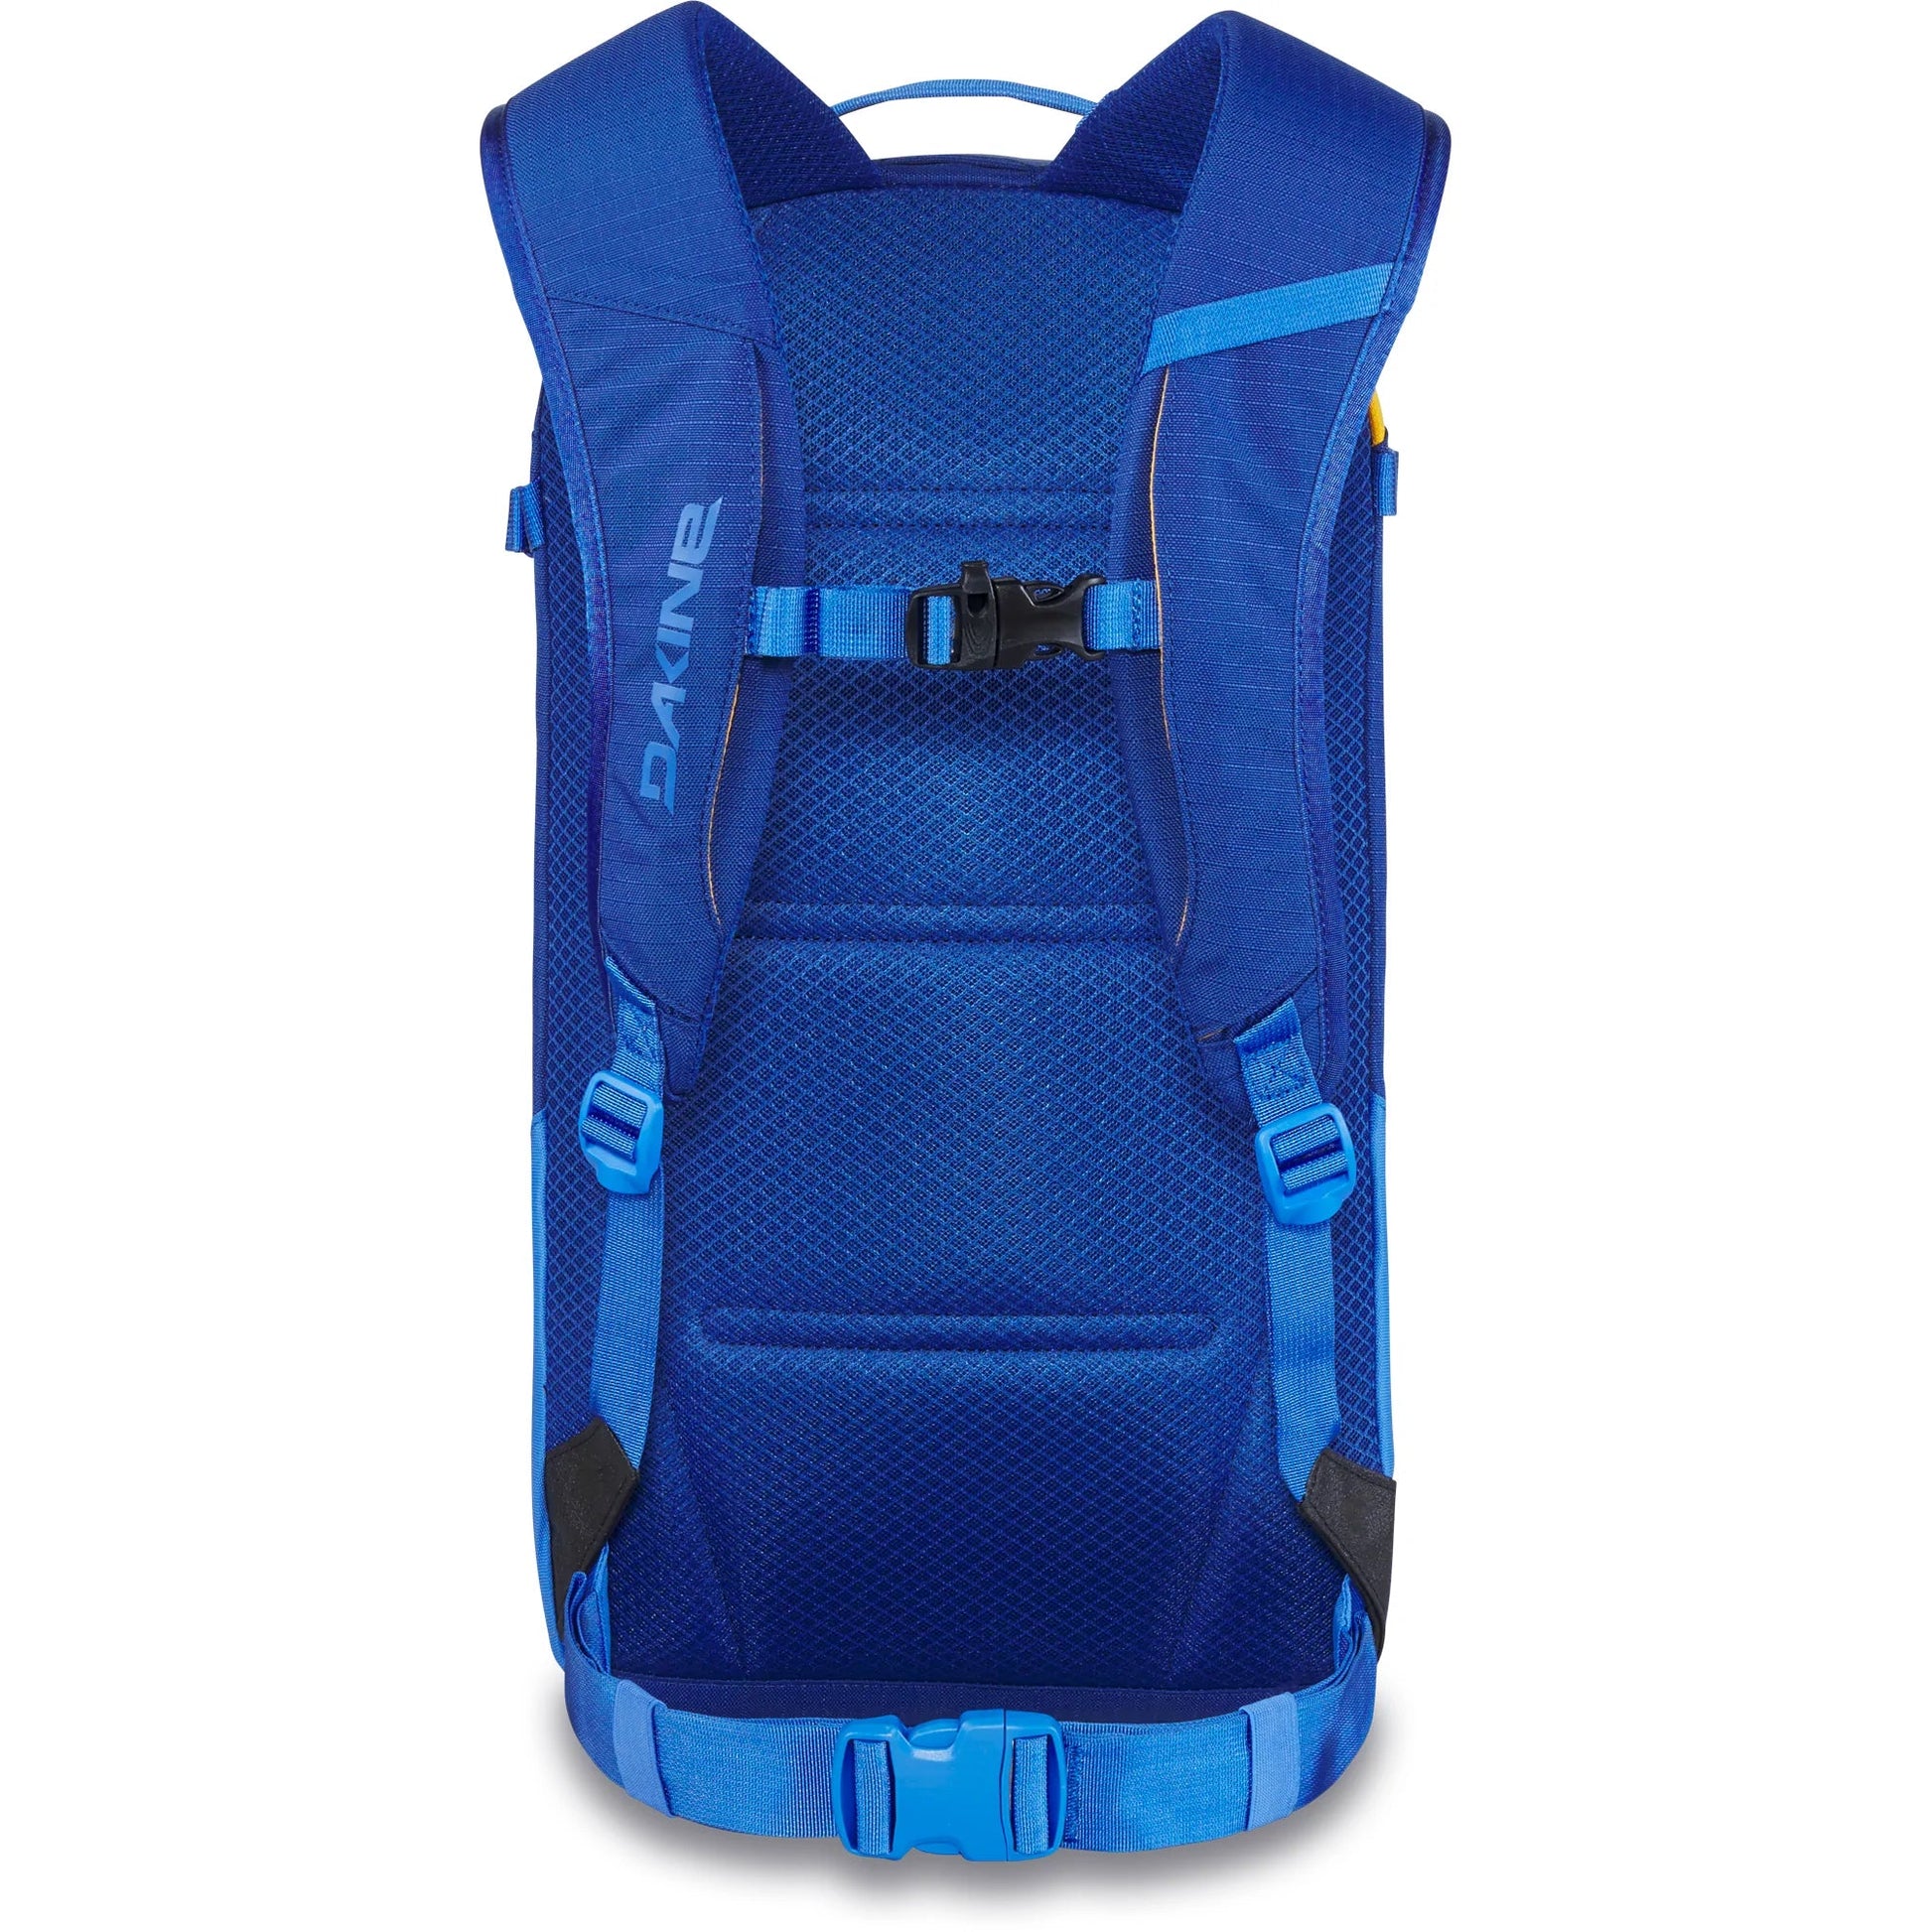 Dakine Heli Pack 12L Backpack - Deep Blue